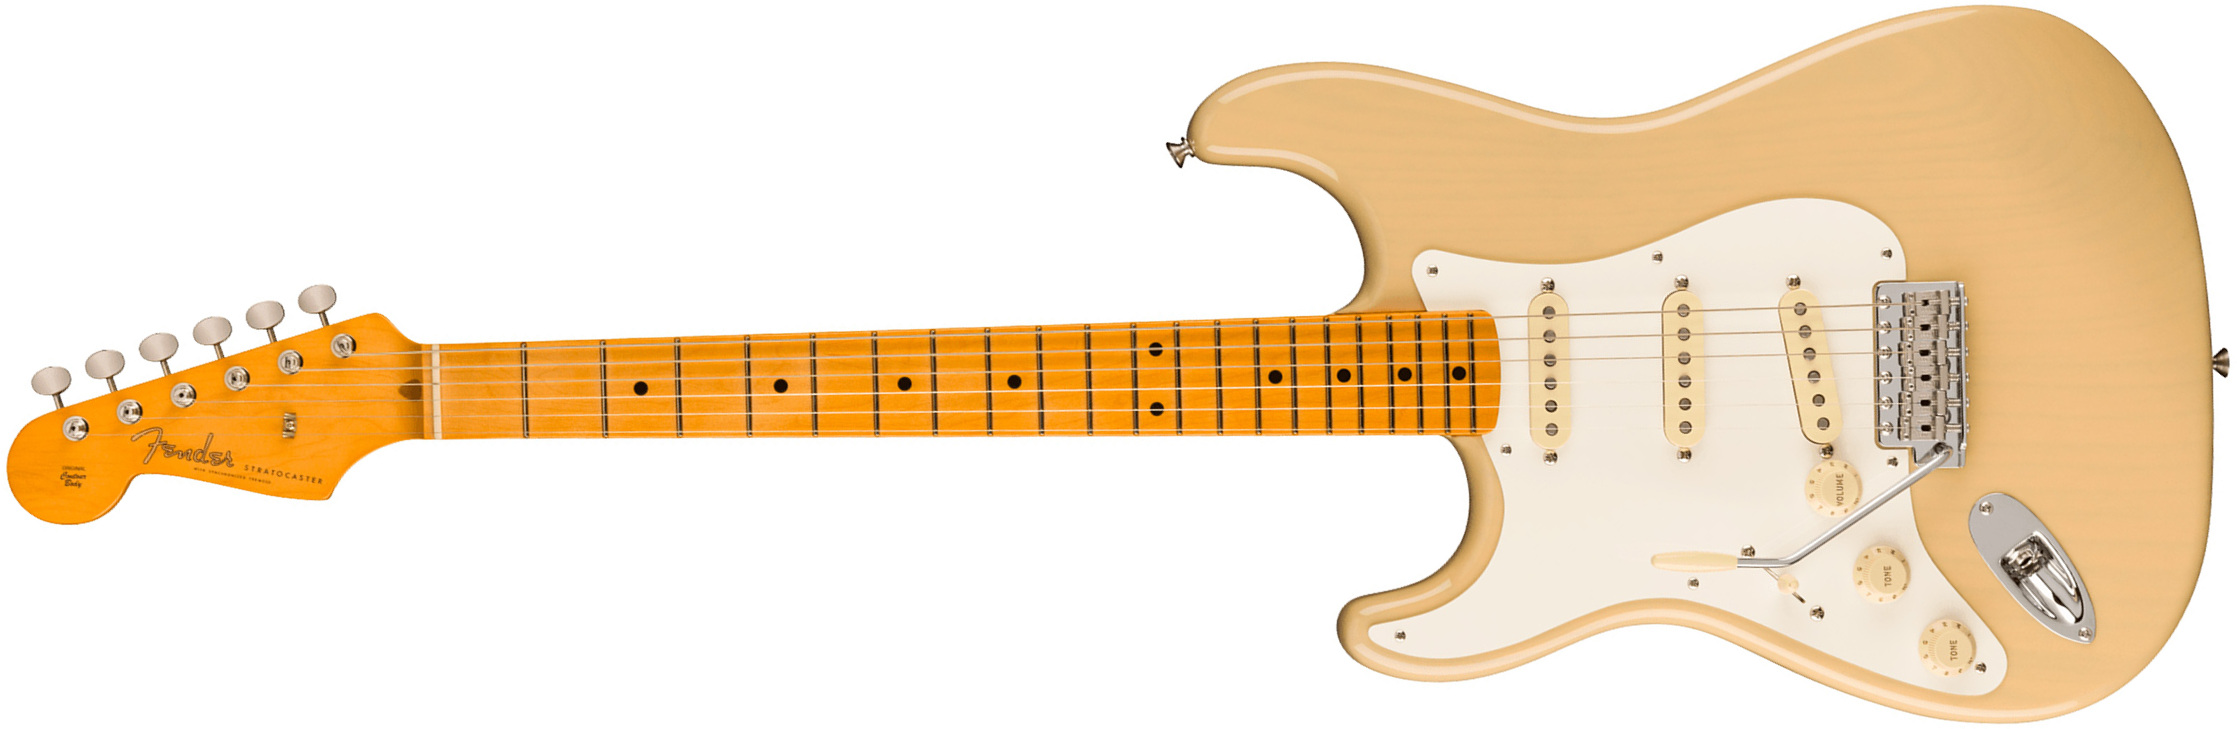 Fender Strat 1957 American Vintage Ii Lh Gaucher Usa 3s Trem Mn - Vintage Blonde - Guitarra electrica para zurdos - Main picture